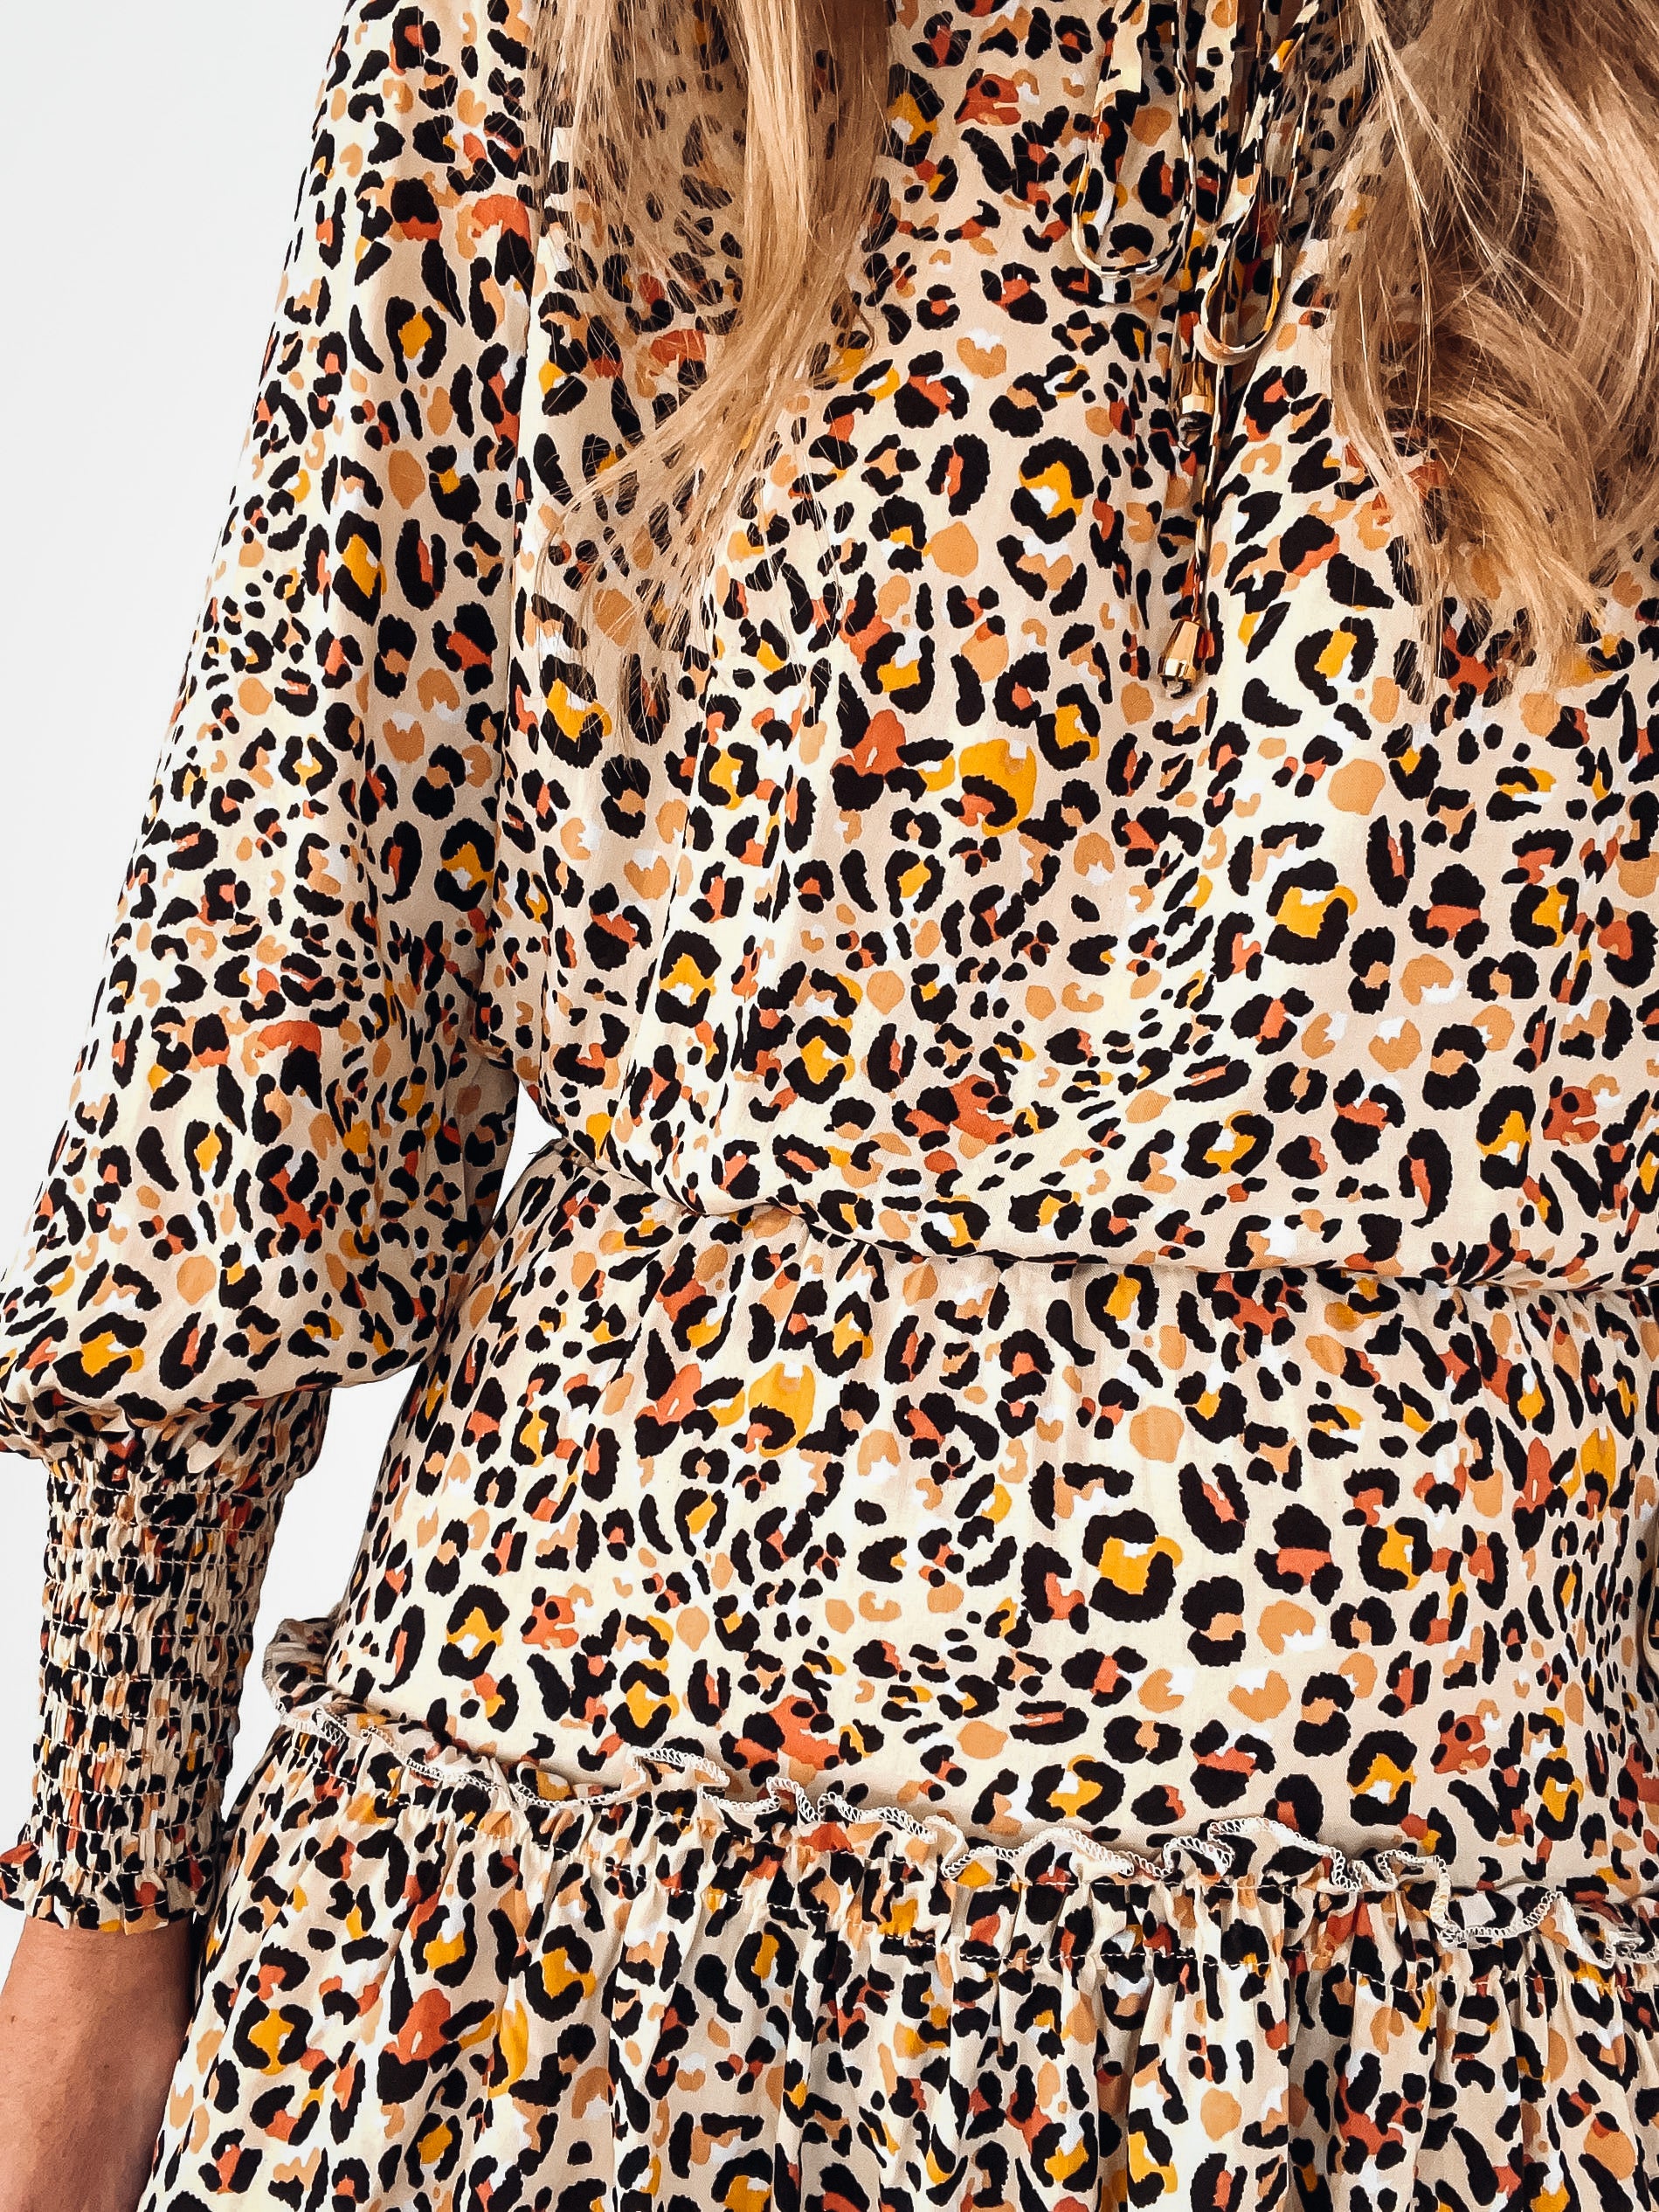 Marina Leopard Dress